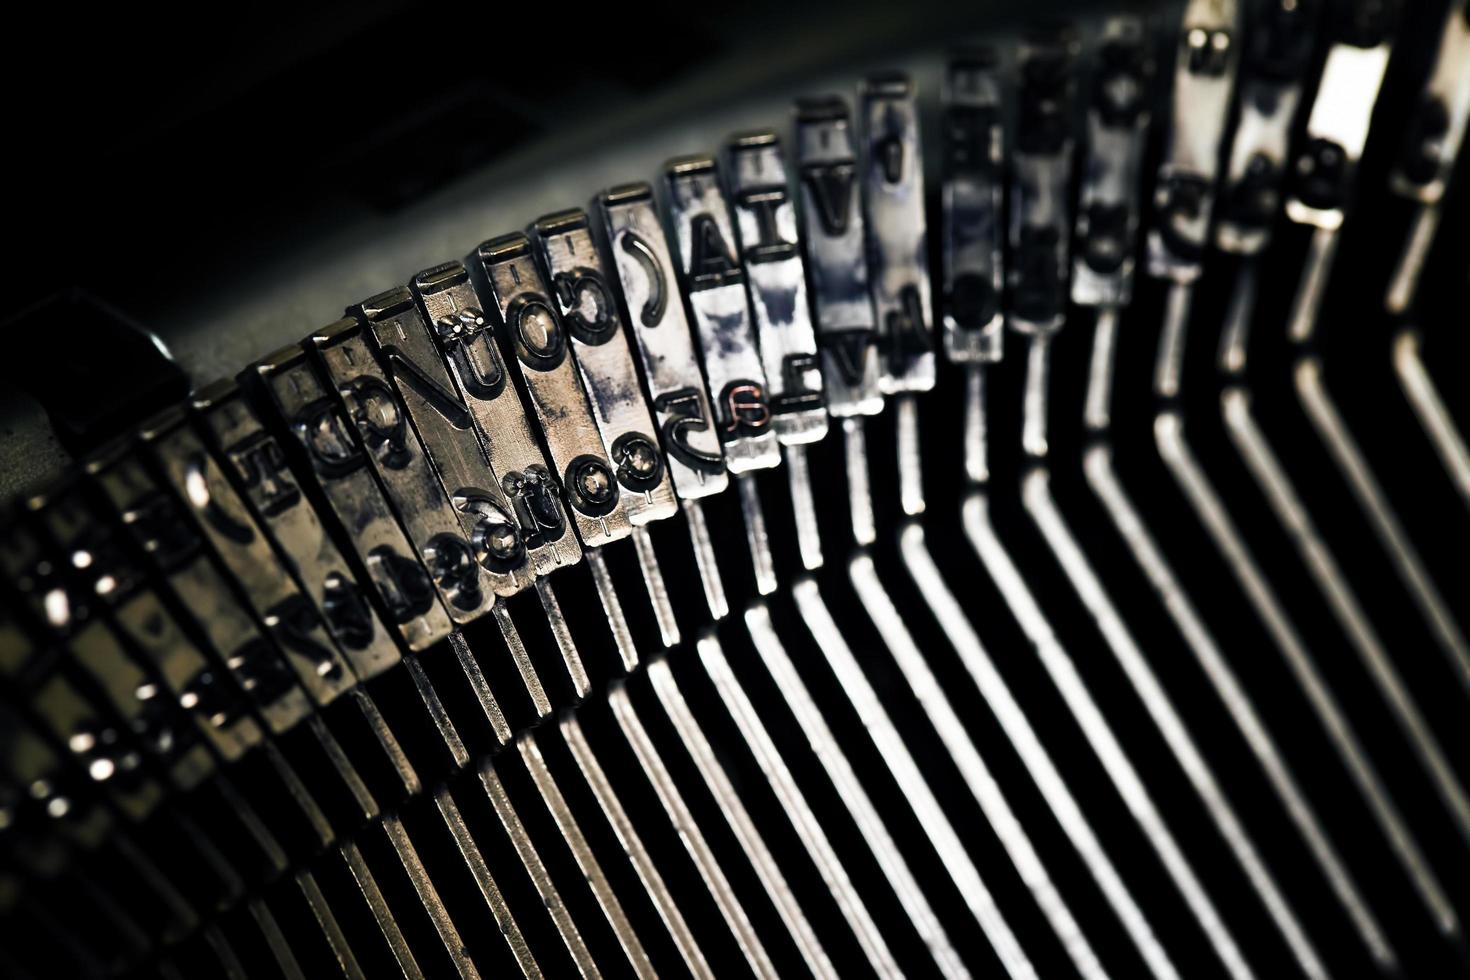 velha máquina de escrever antiga foto